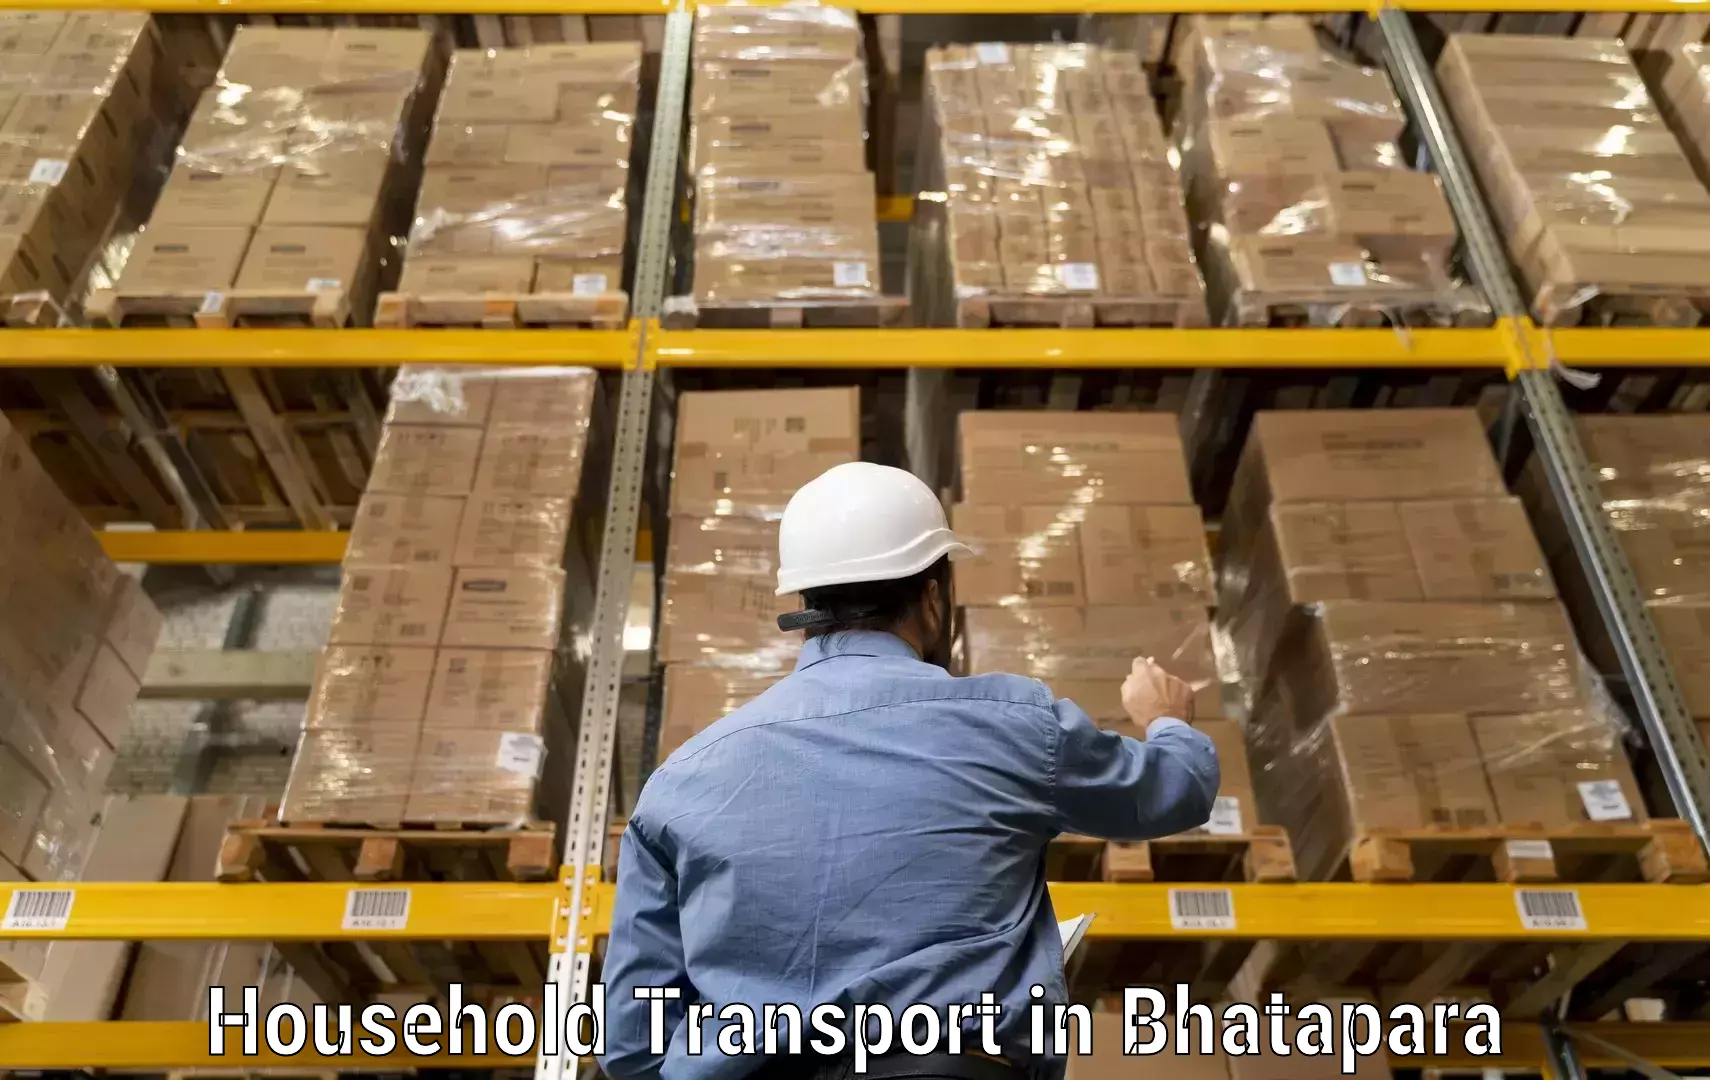 Furniture transport professionals in Bhatapara